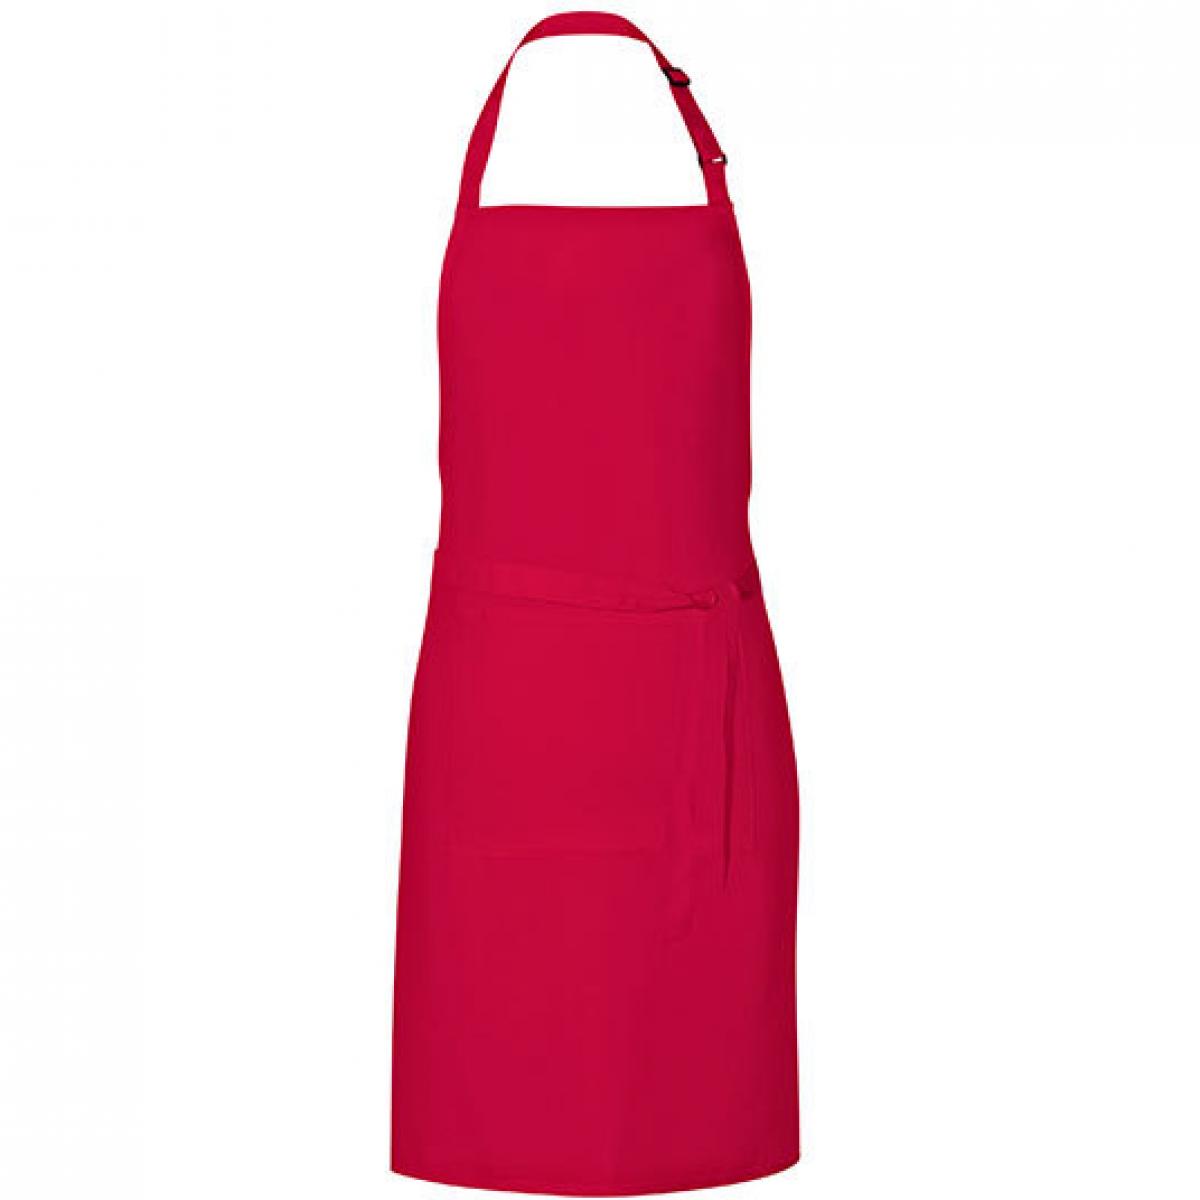 Hersteller: Link Kitchen Wear Herstellernummer: GS8572 Artikelbezeichnung: Grill Apron - 85 x 72 cm - Waschbar bis 60 °C Farbe: Strawberry Red (ca. Pantone 186)